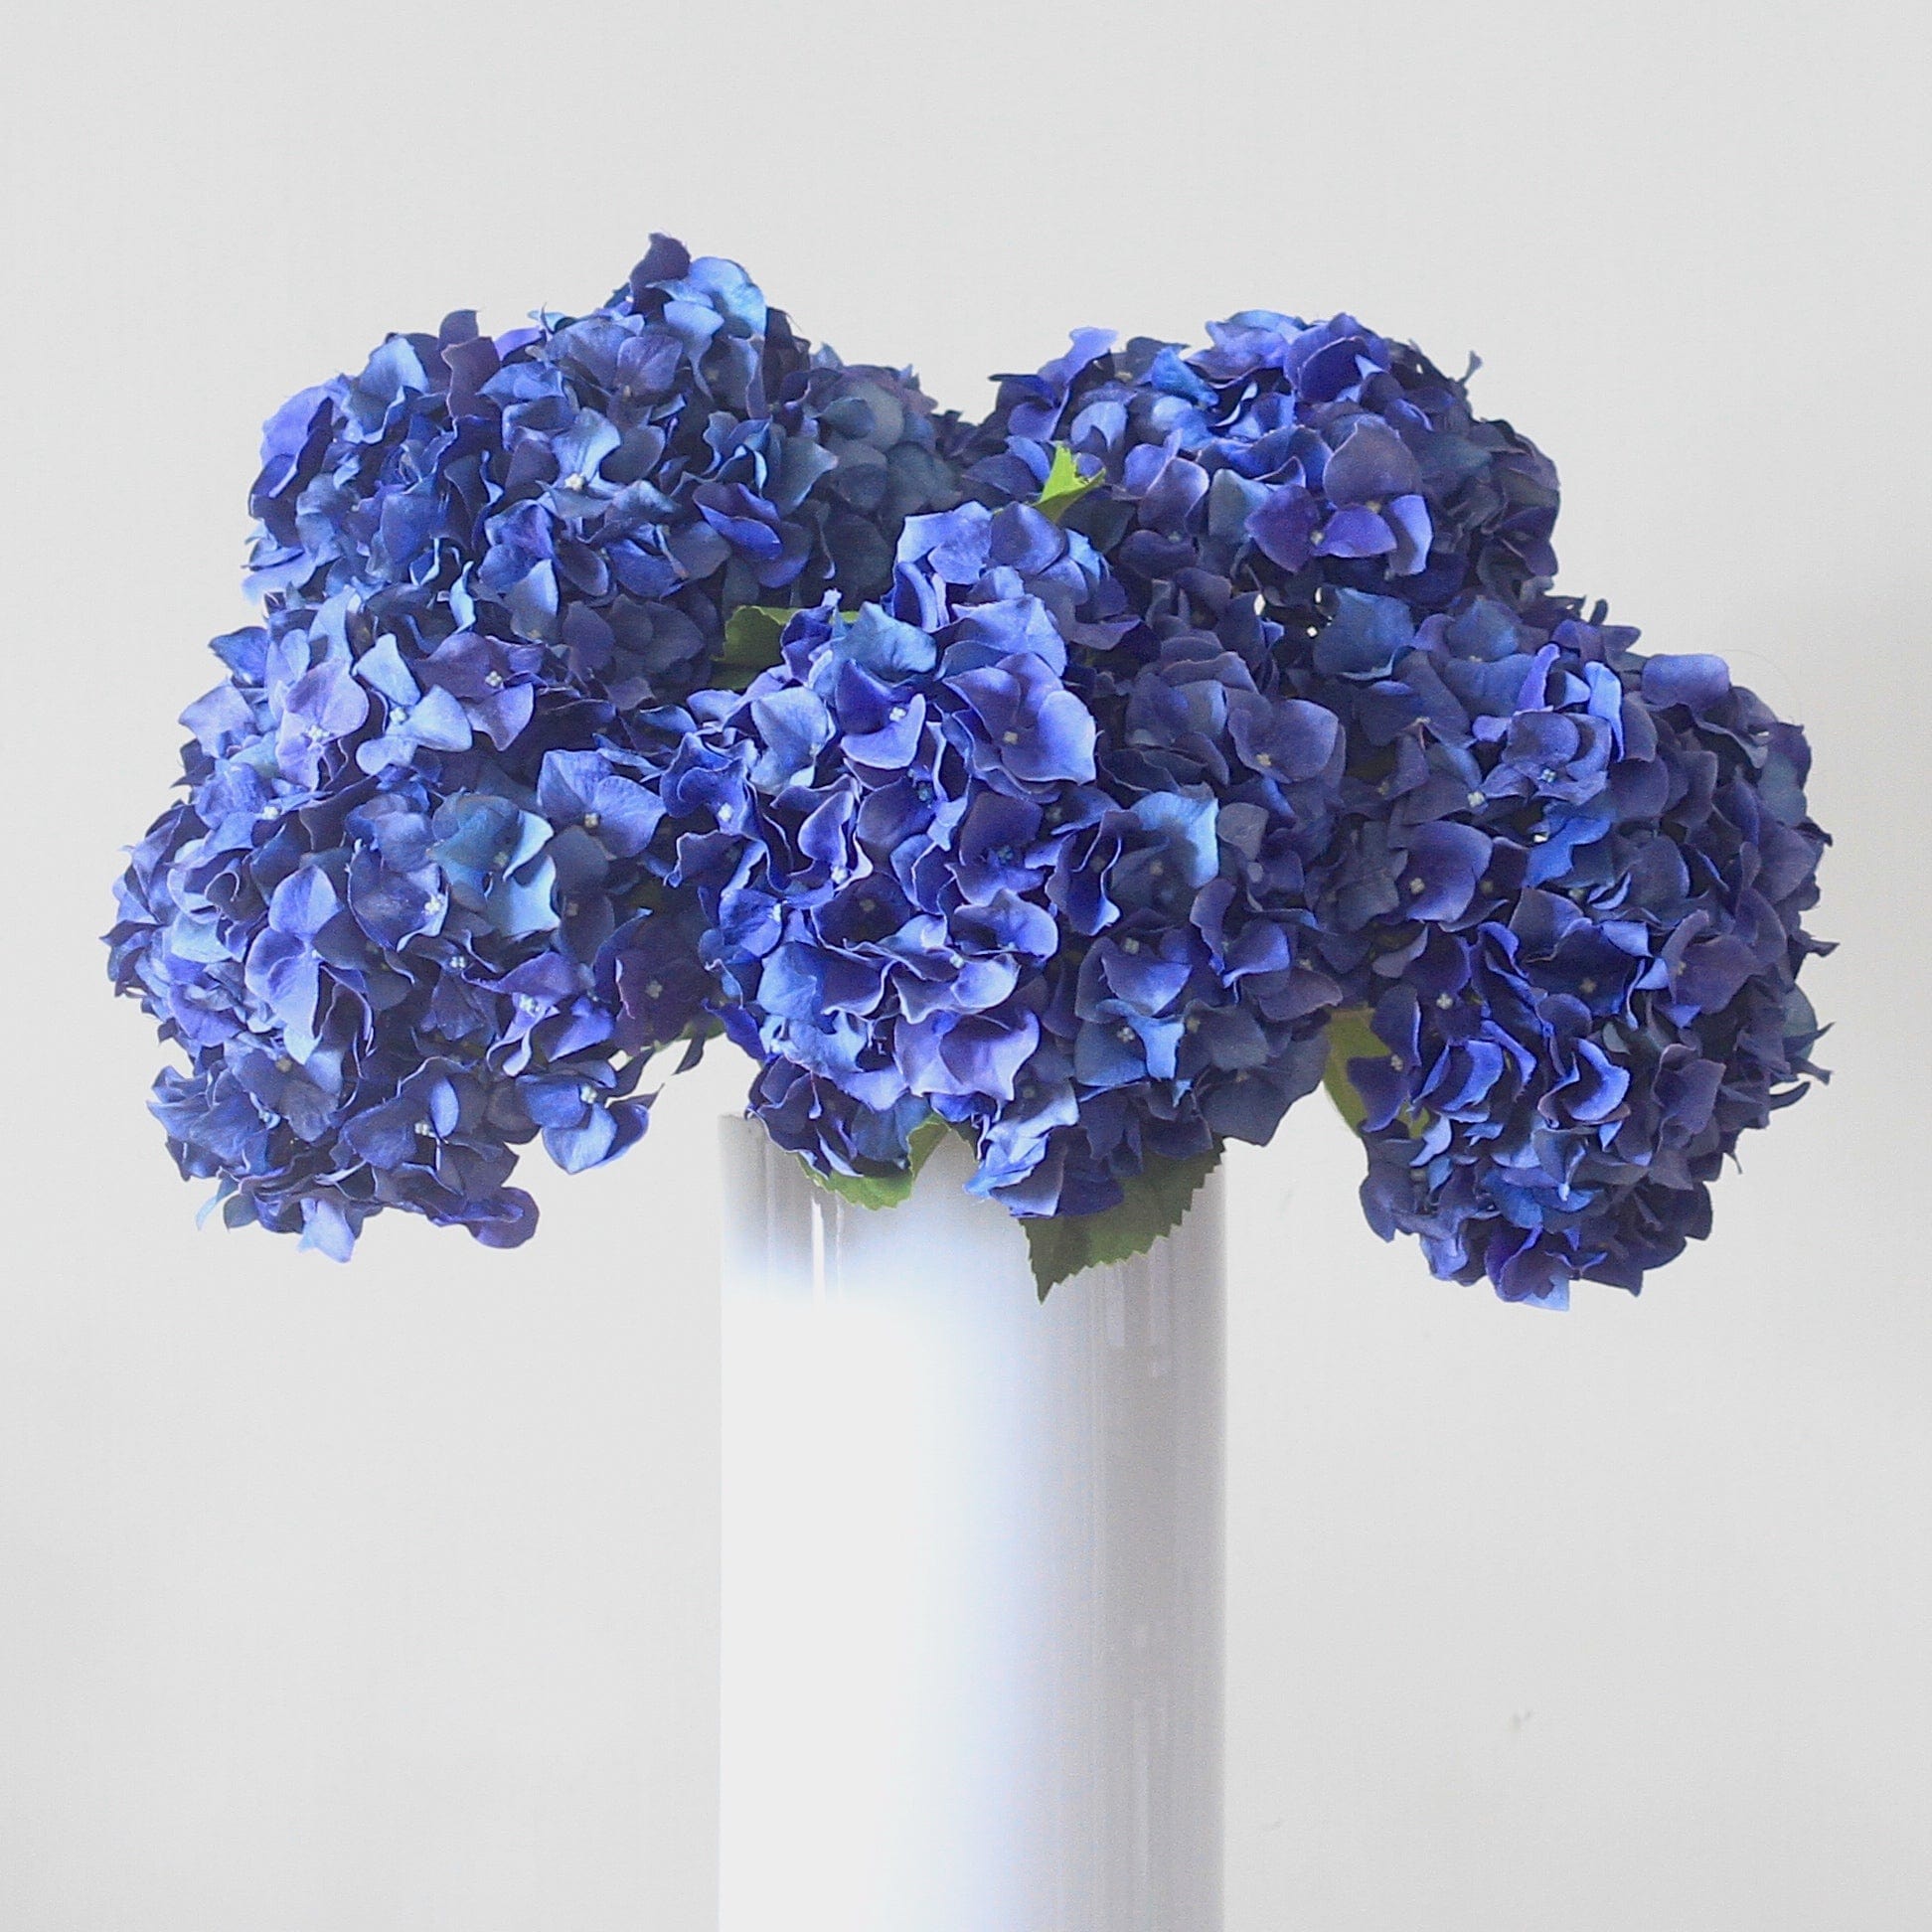 Artificial flowers luxury faux silk blue dried hydrangea lifelike realistic faux flowers buy online from Amaranthine Blooms UK